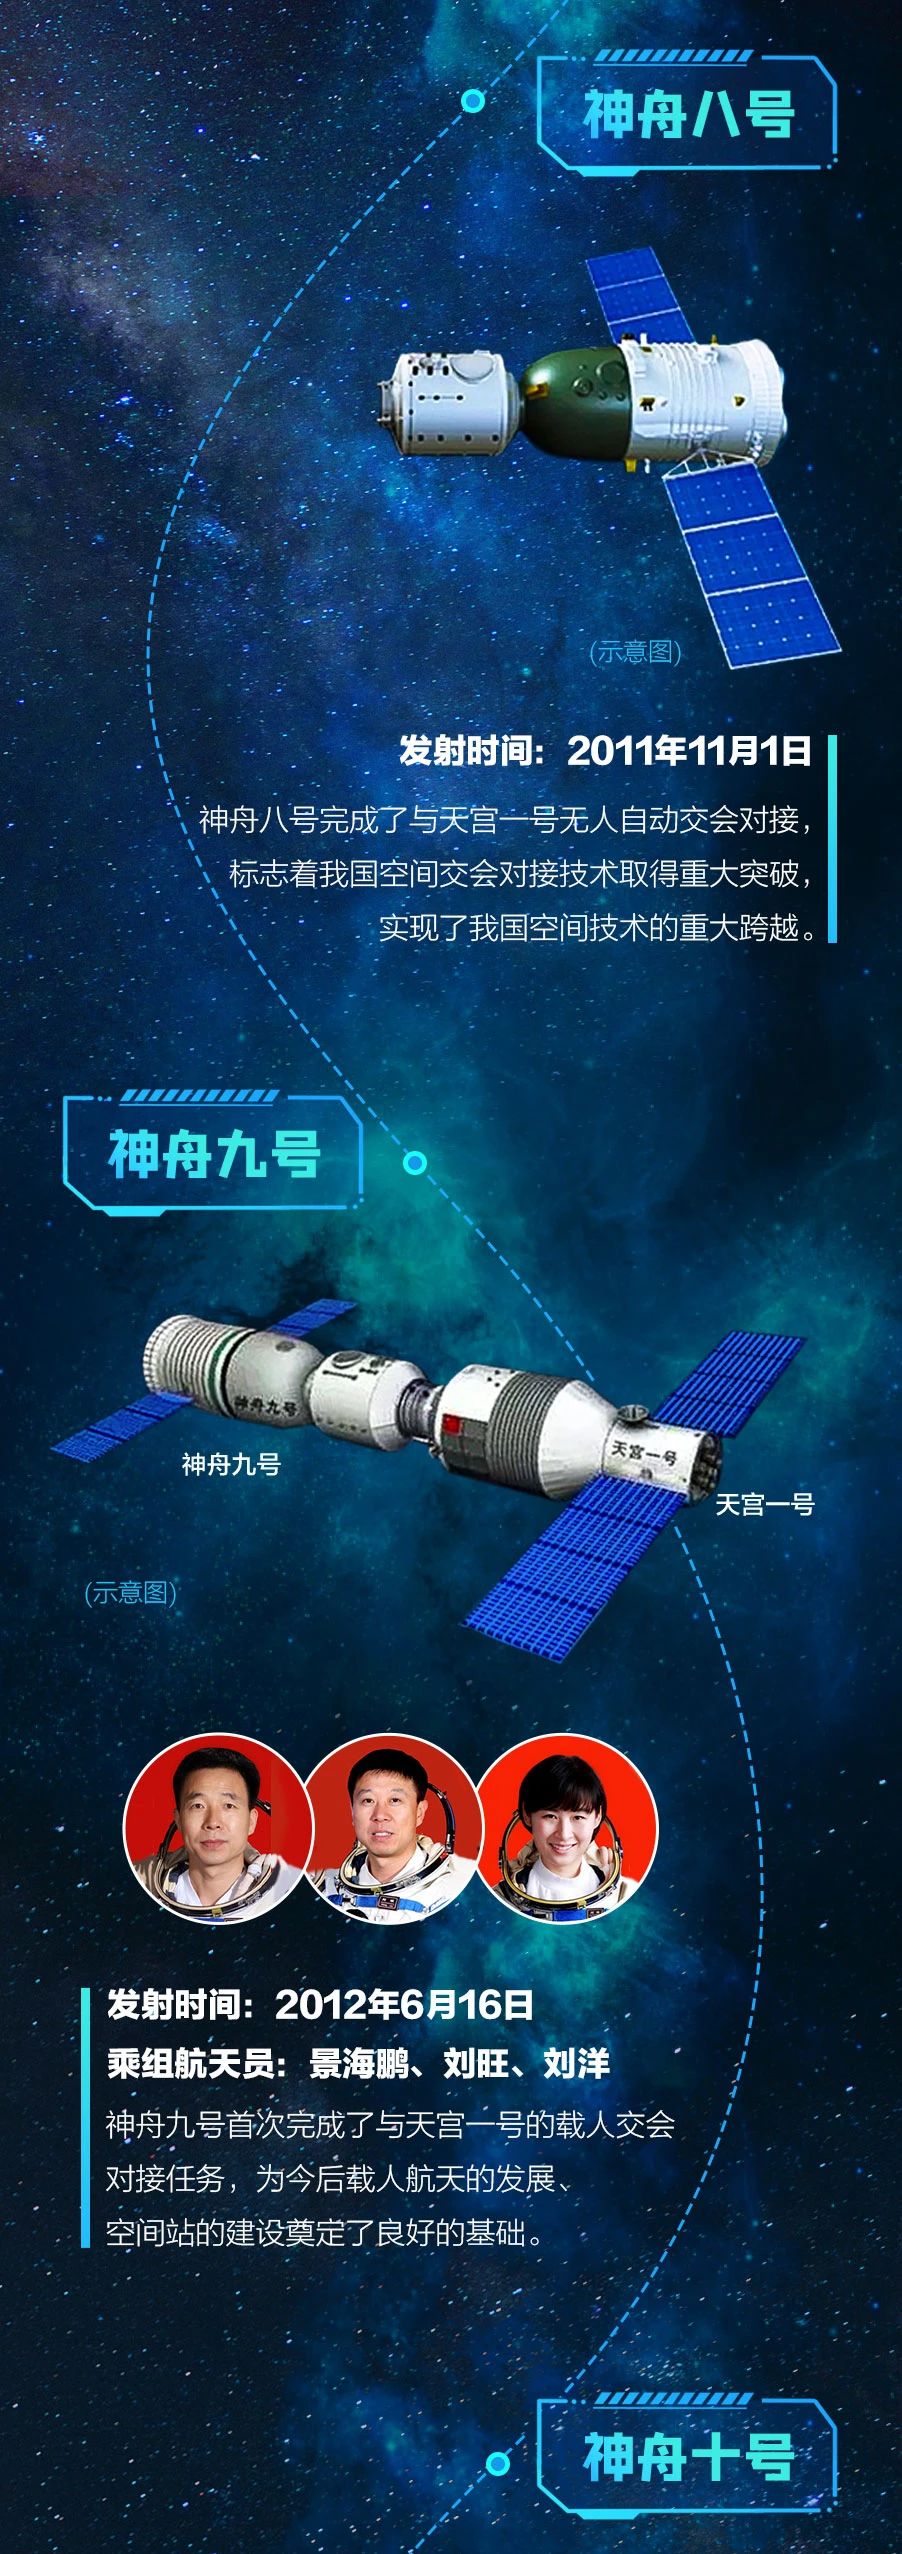 逐梦太空 一图回顾中国载人航天22年足迹